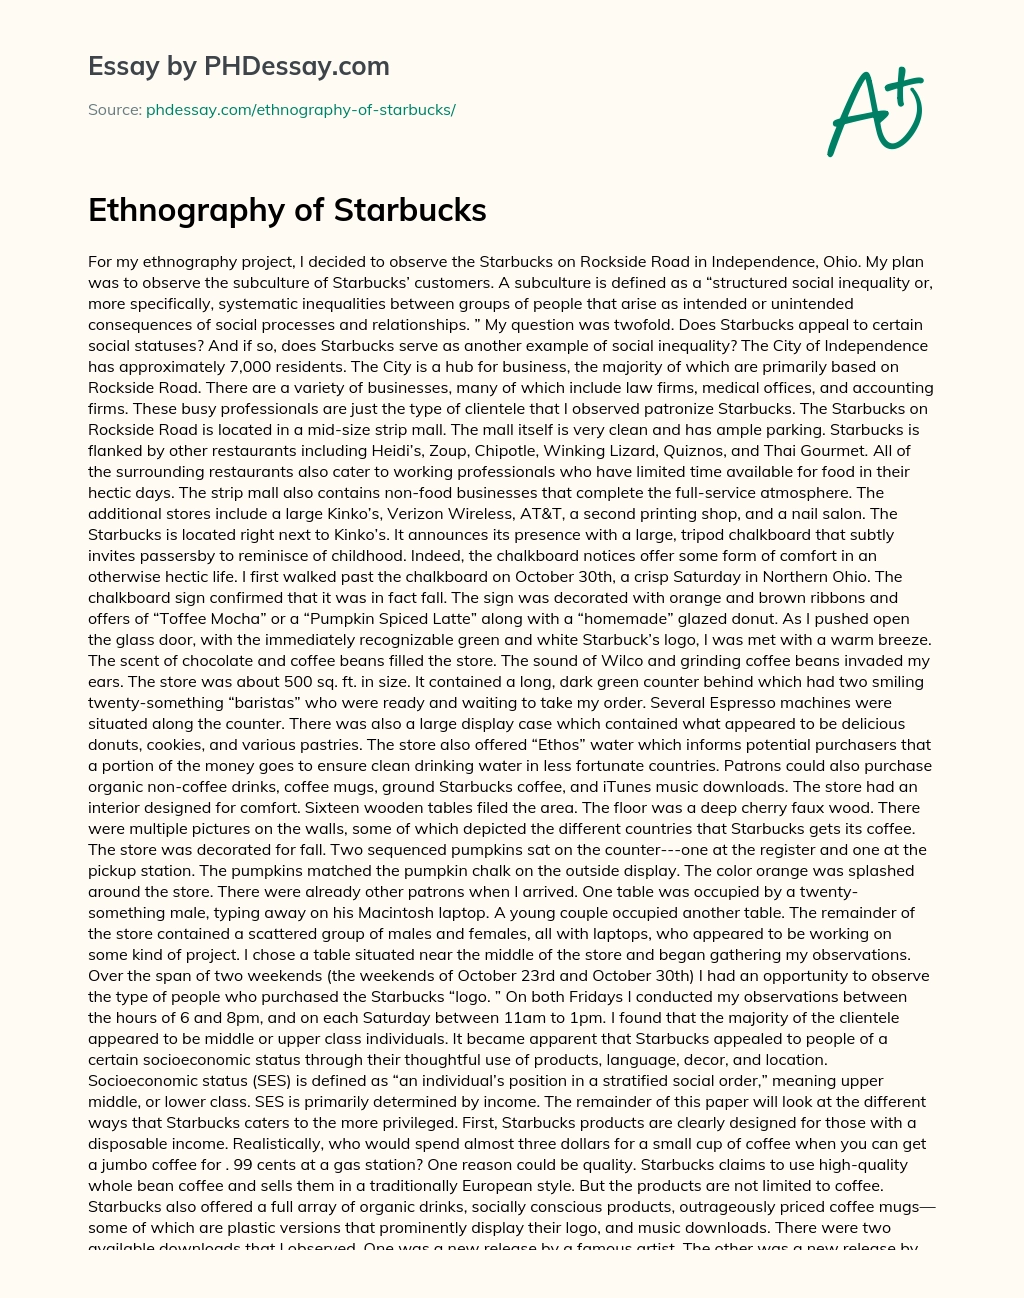 Ethnography of Starbucks essay